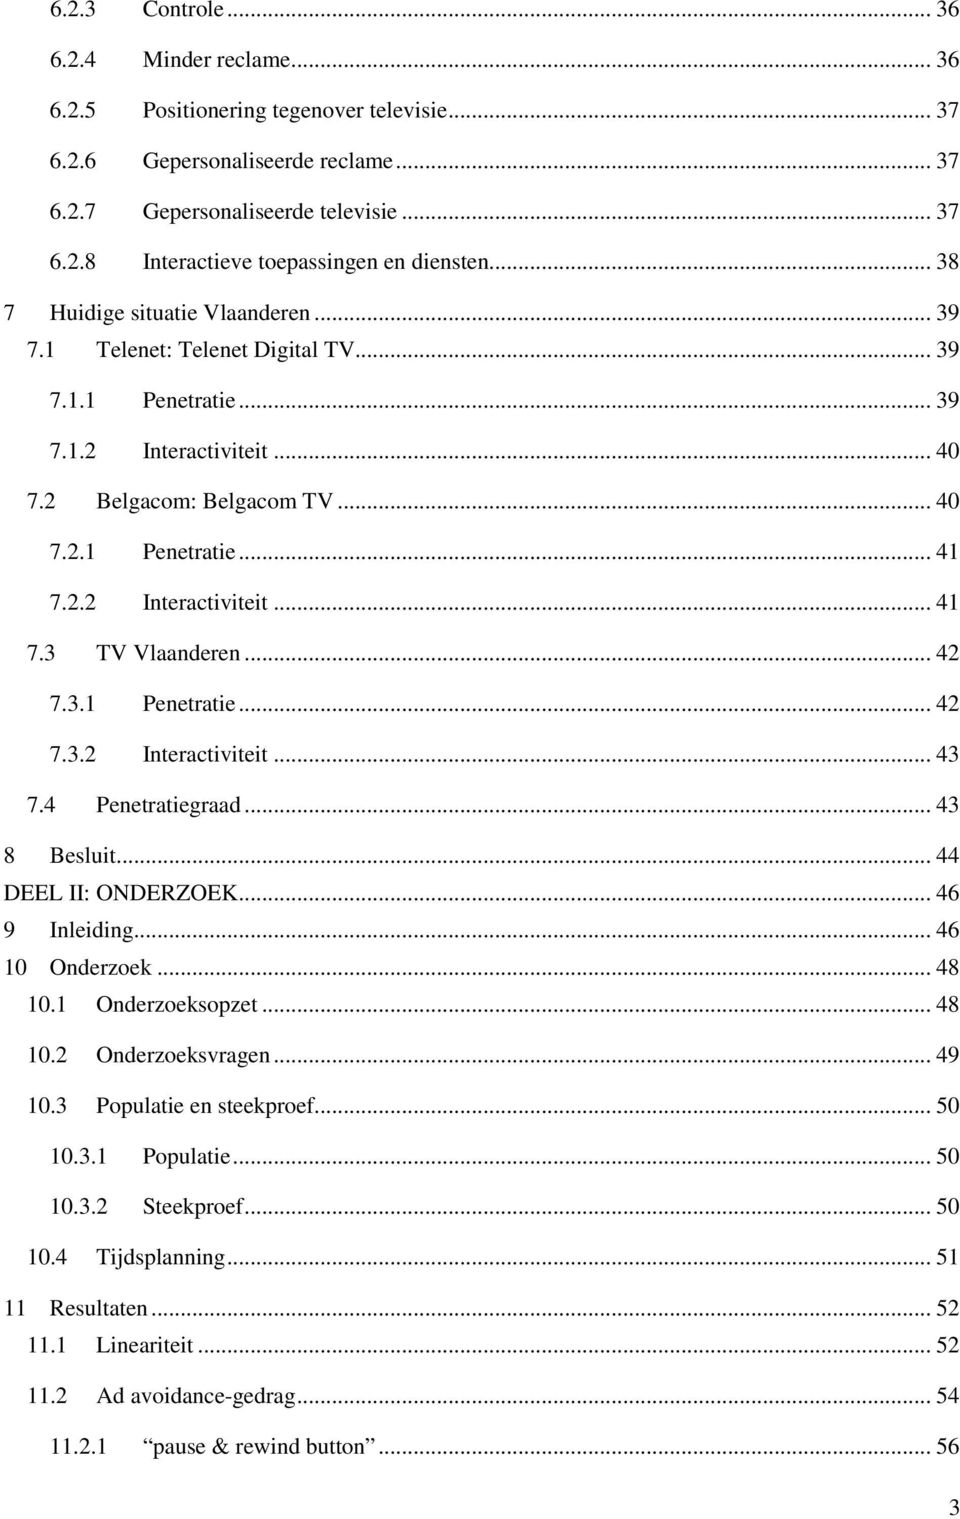 2.2 Interactiviteit... 41 7.3 TV Vlaanderen... 42 7.3.1 Penetratie... 42 7.3.2 Interactiviteit... 43 7.4 Penetratiegraad... 43 8 Besluit... 44 DEEL II: ONDERZOEK... 46 9 Inleiding... 46 10 Onderzoek.